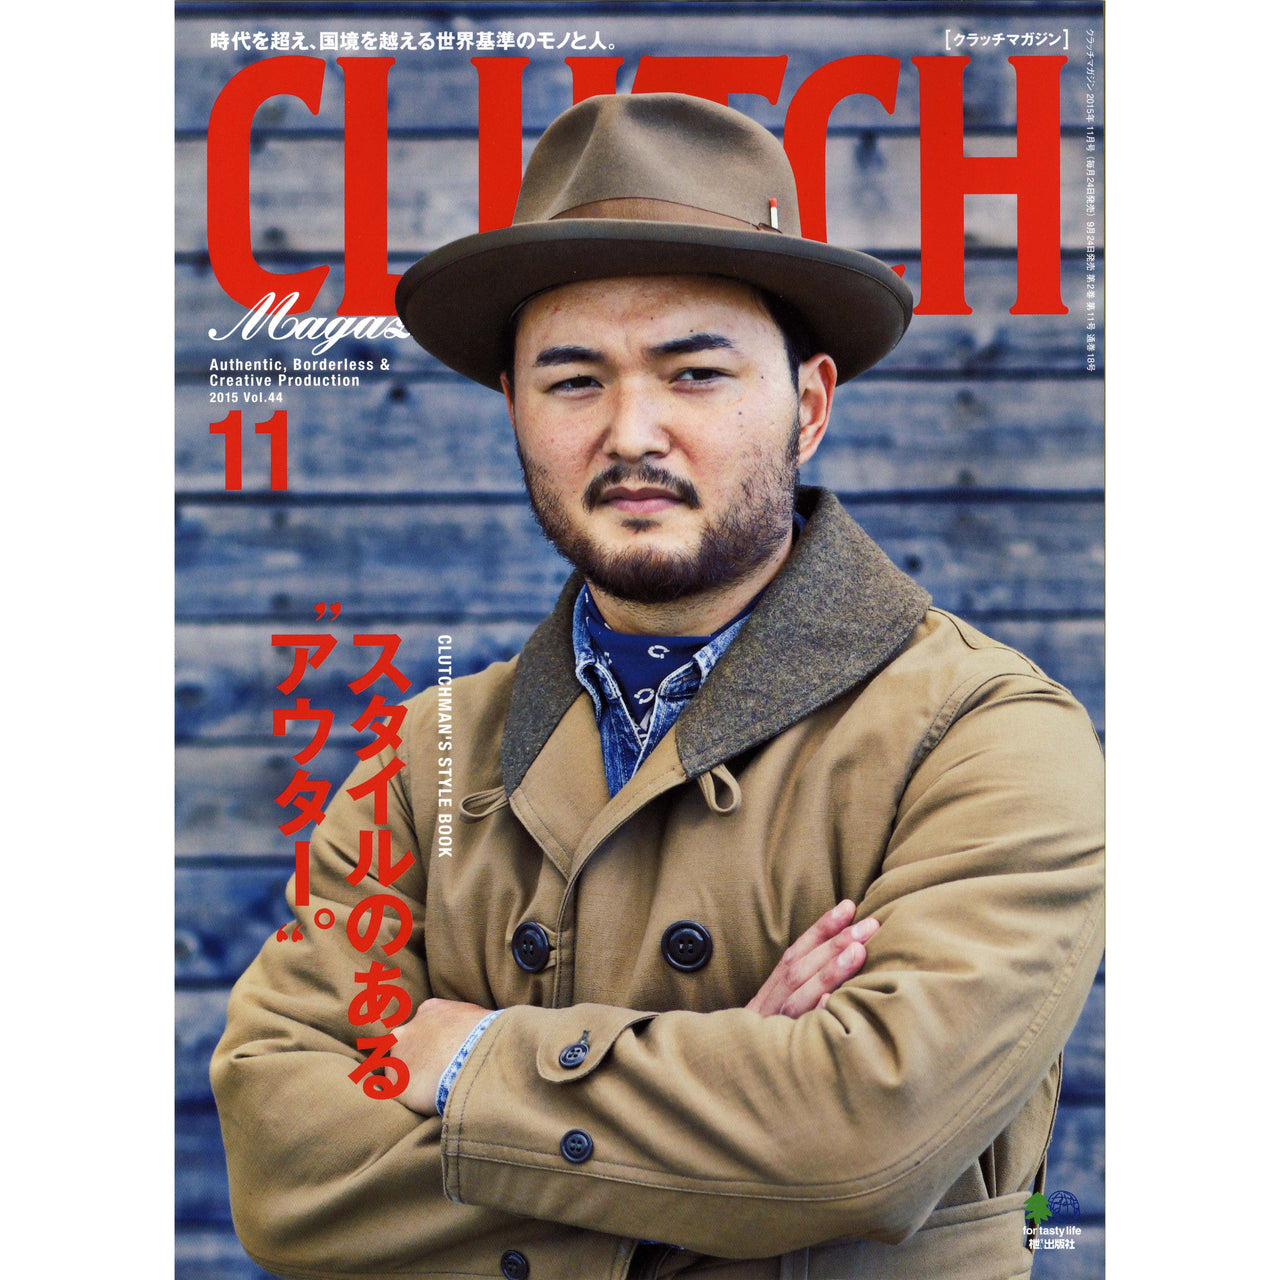 Clutch Magazine Vol.44-Clutch Cafe